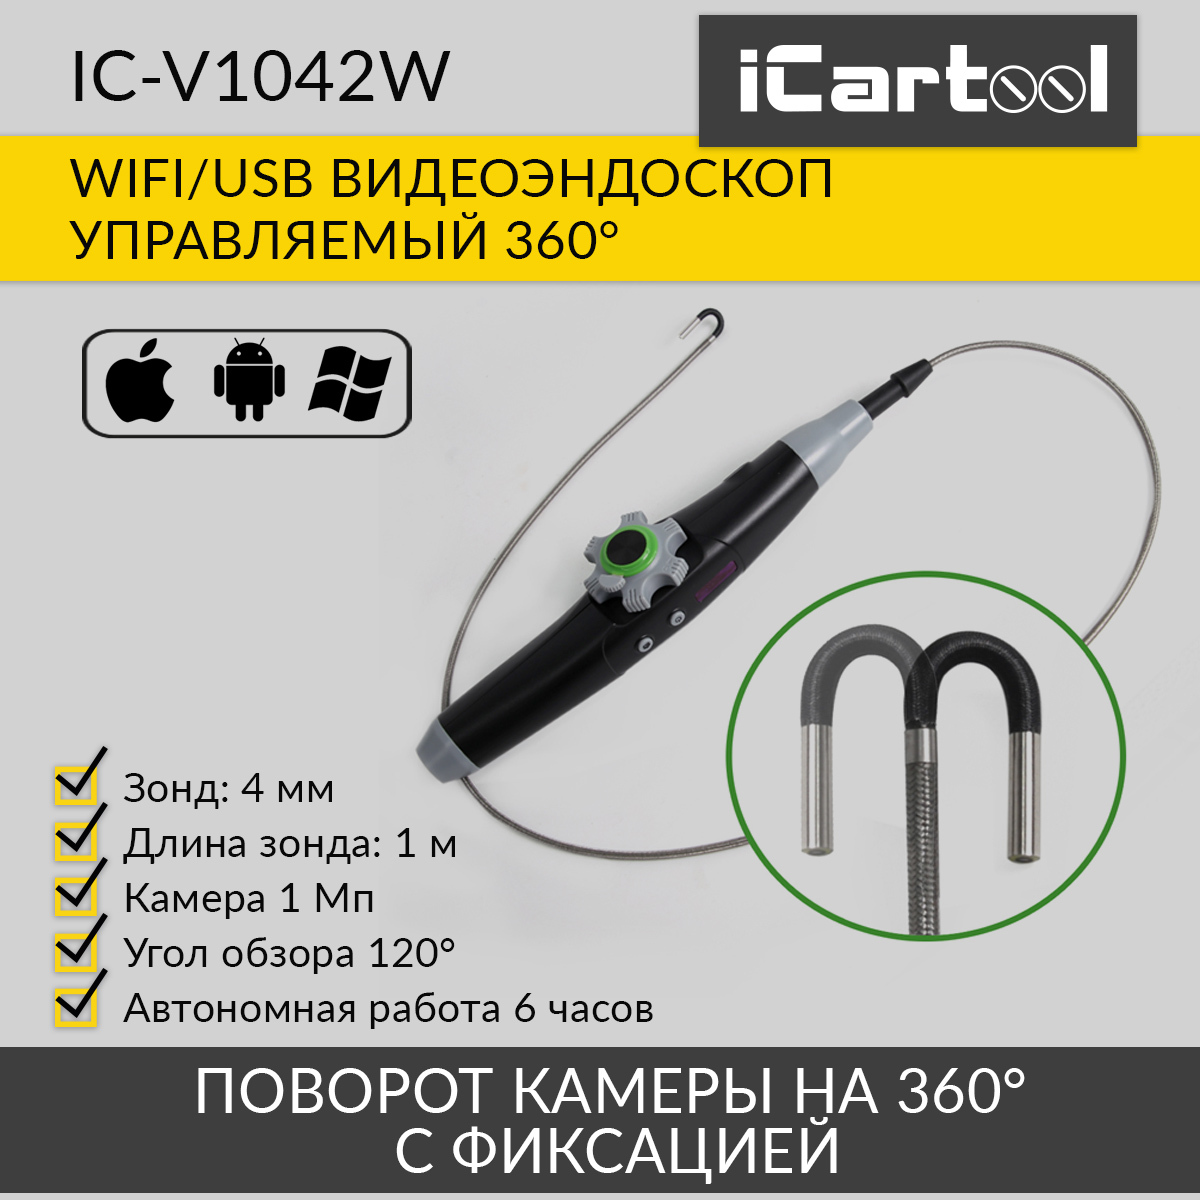 видеоэндоскоп управляемый icartool ic v200c экран 5 2мп 1920x1080 1м 6мм 360 Видеоэндоскоп управляемый iCartool IC-V1042W WIFI/USB, 1Мп, 1168х720, 1м, 4мм зонд, 360°